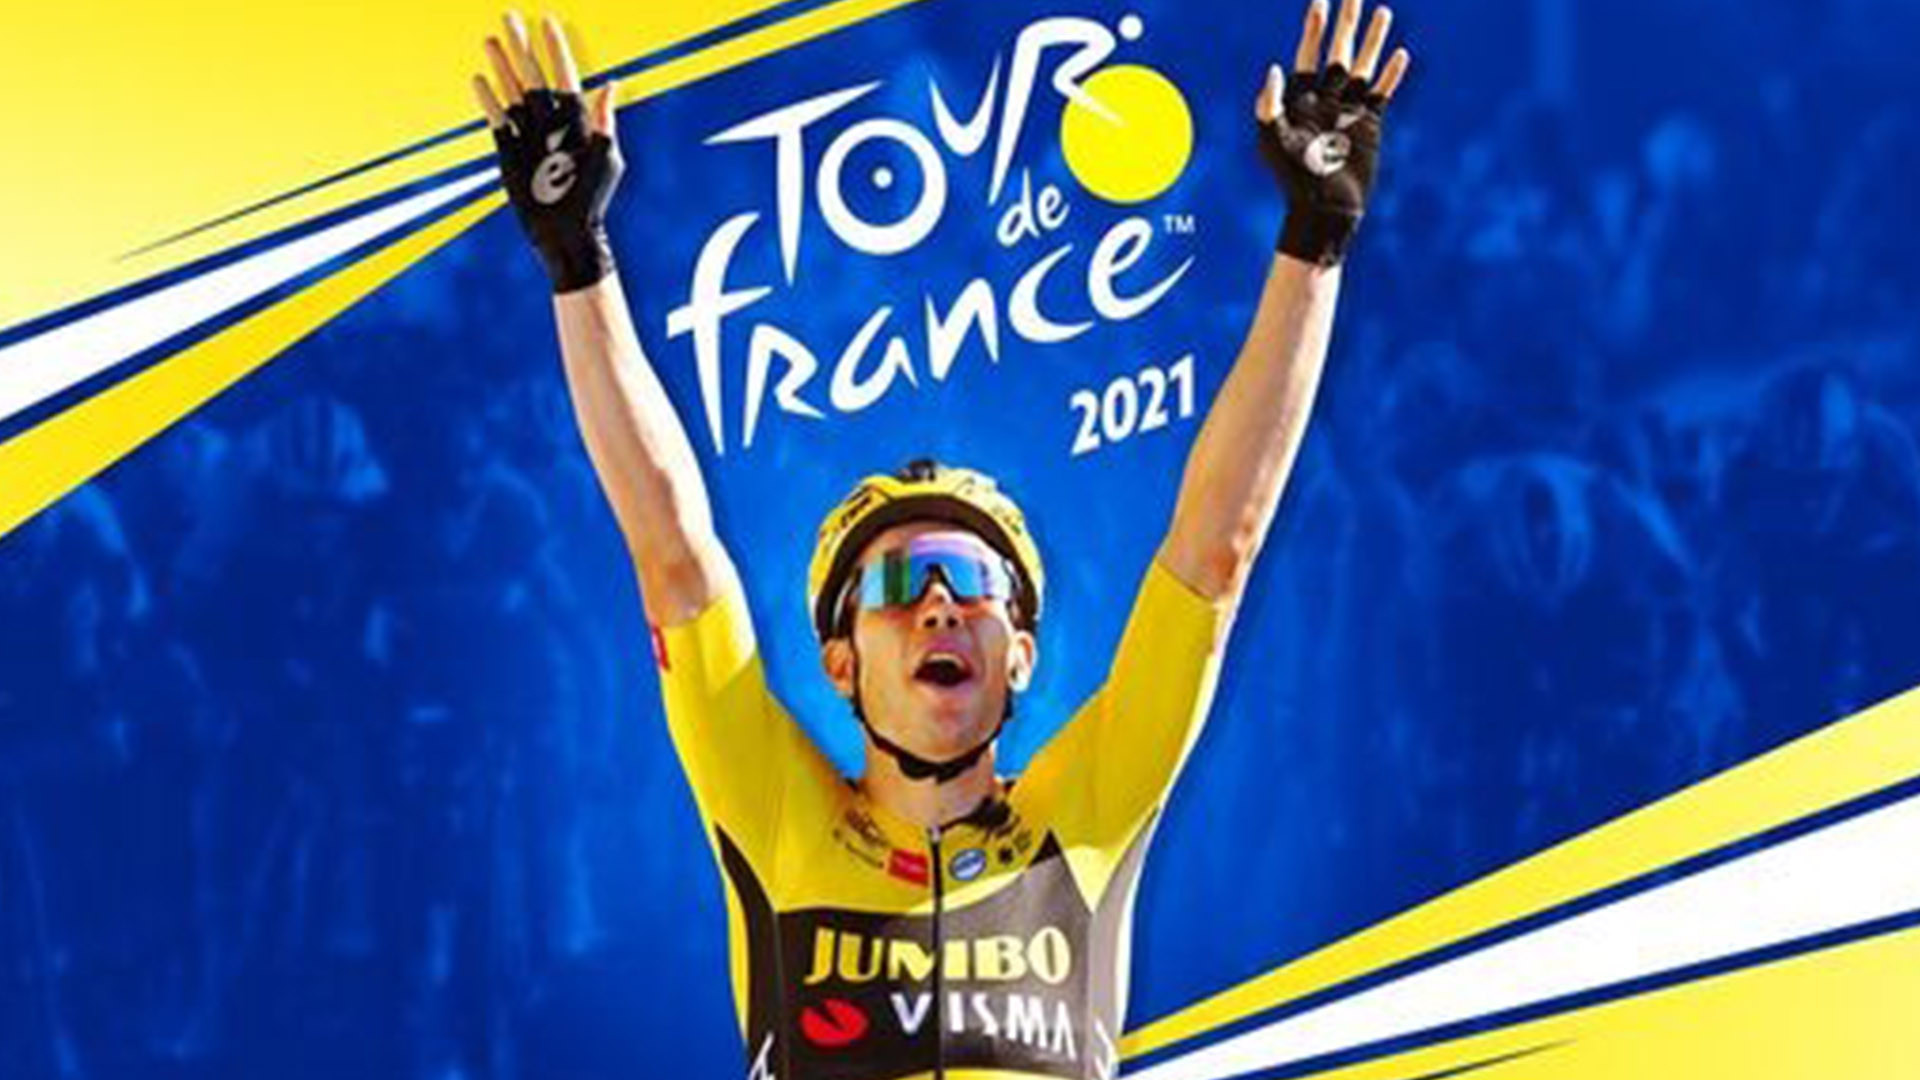 Jaquette Tour de France 2021